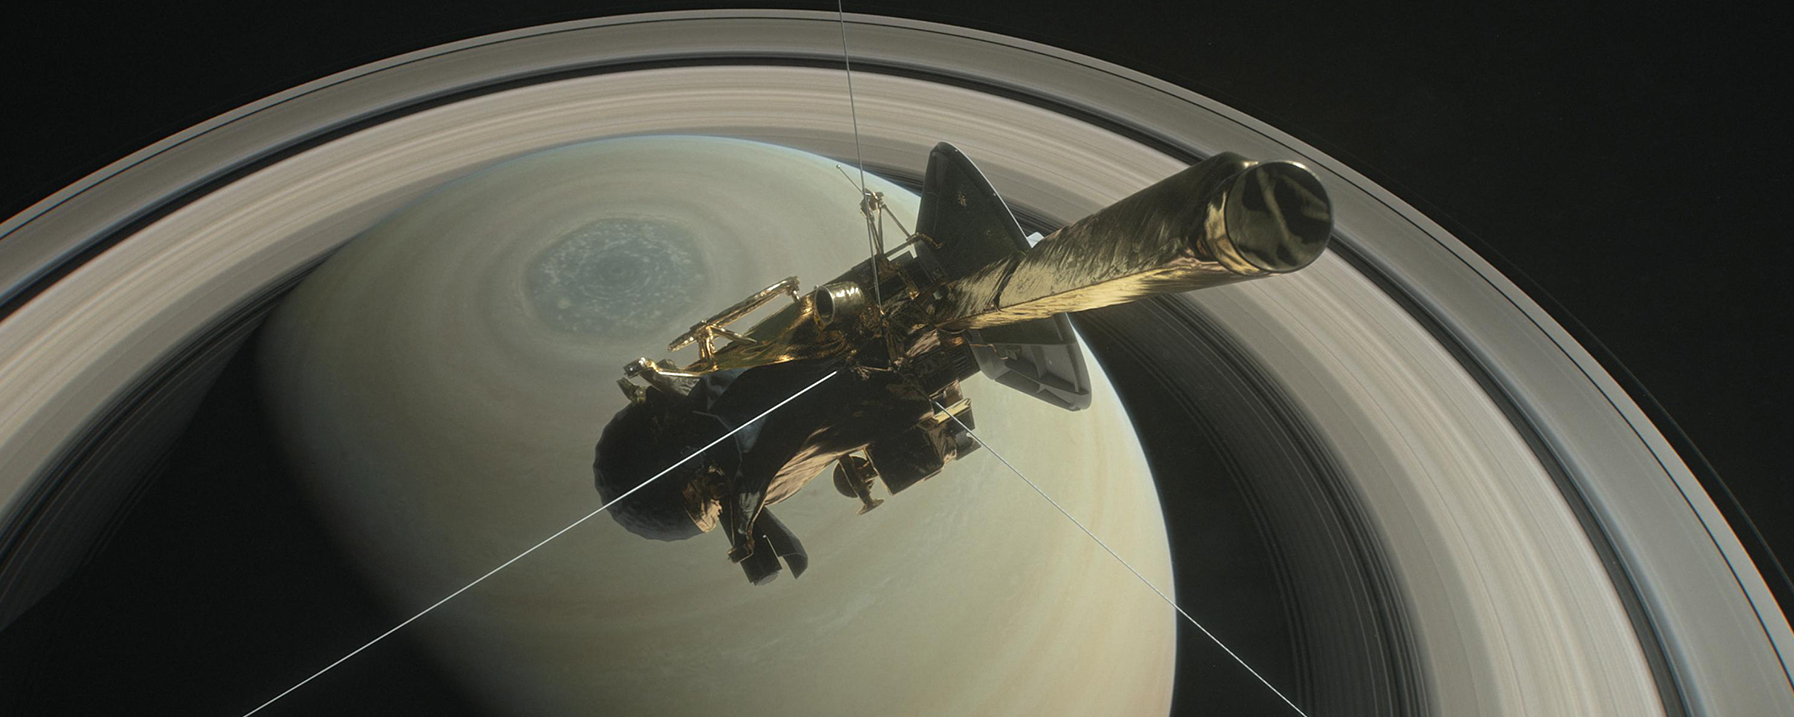 Artist Concept of Cassini Spacecraft Orbiting Saturn